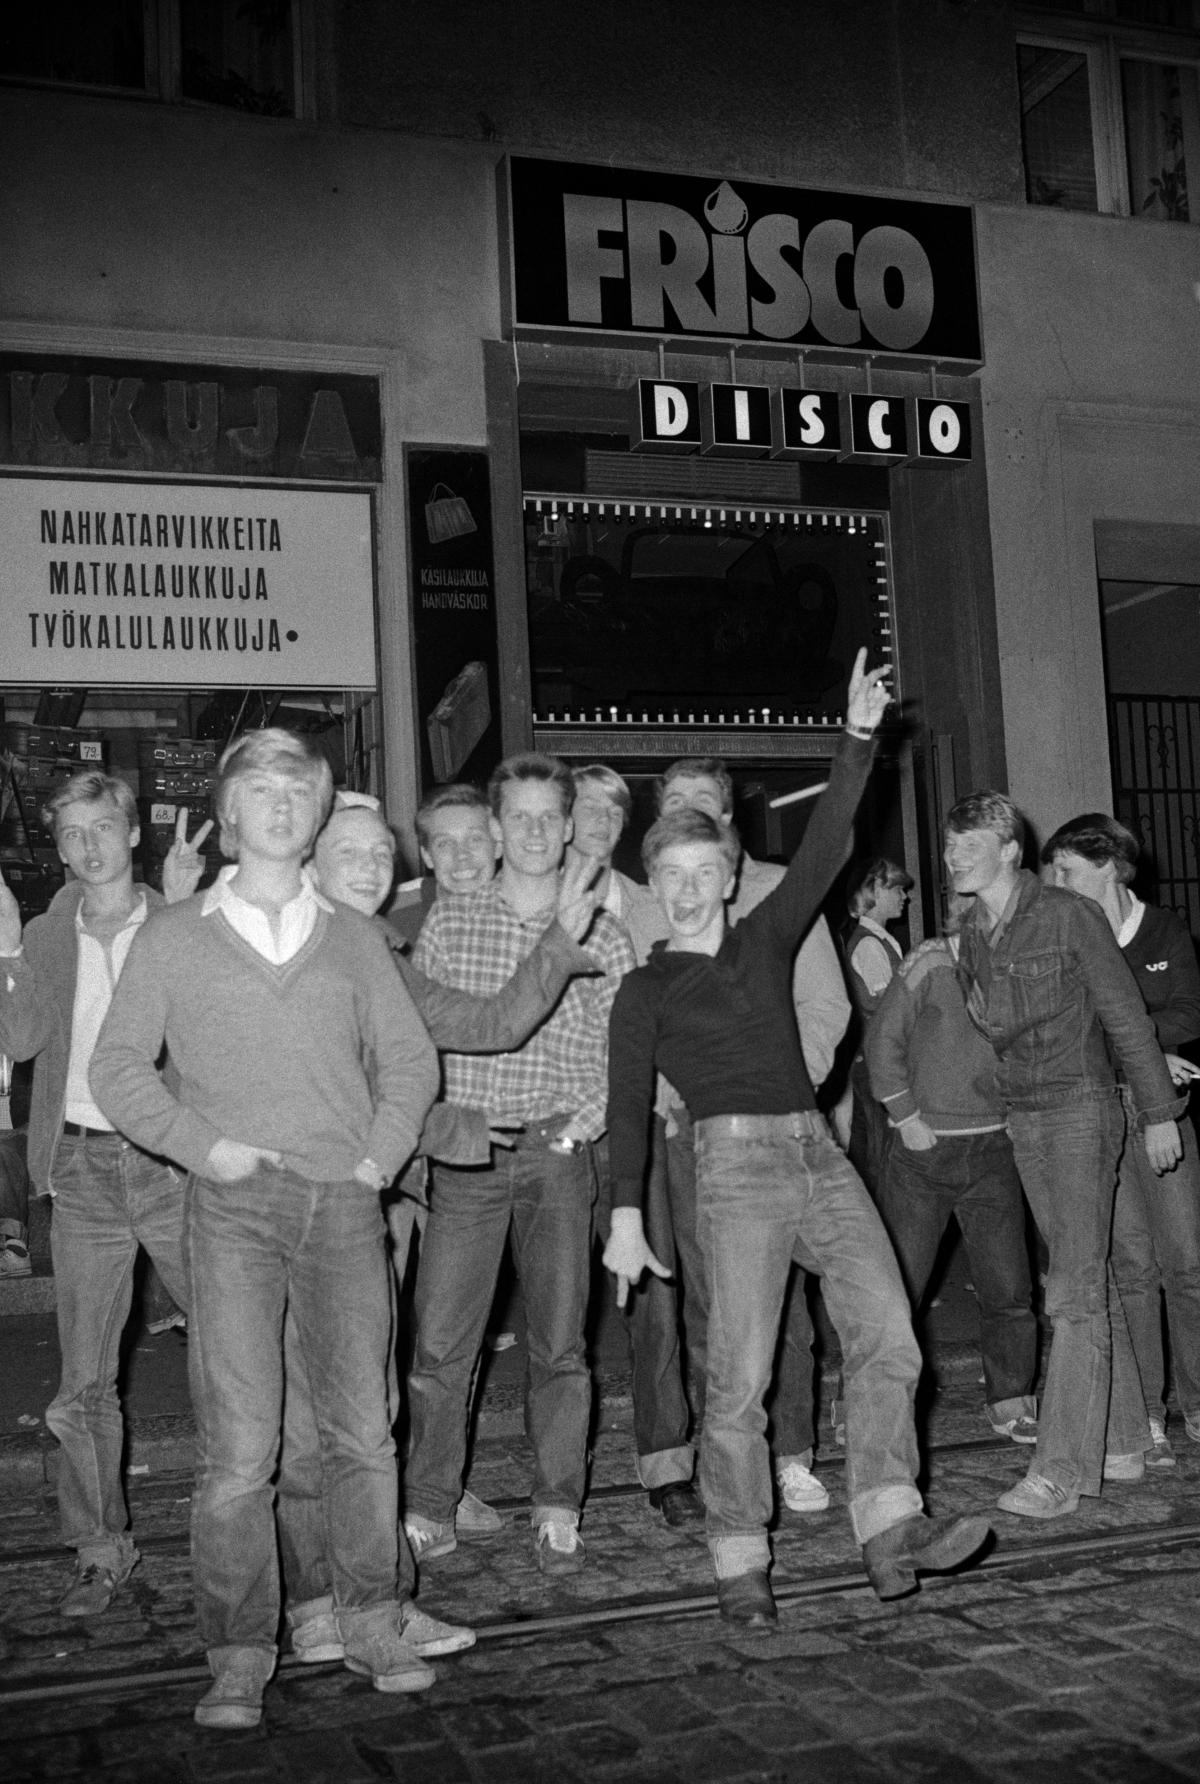 En skara ungdomar poserar för fotografen utanför dansrestaurang Frisco Disco år 1978. Alla är klädda i jeans, en del i femtitalsstil.